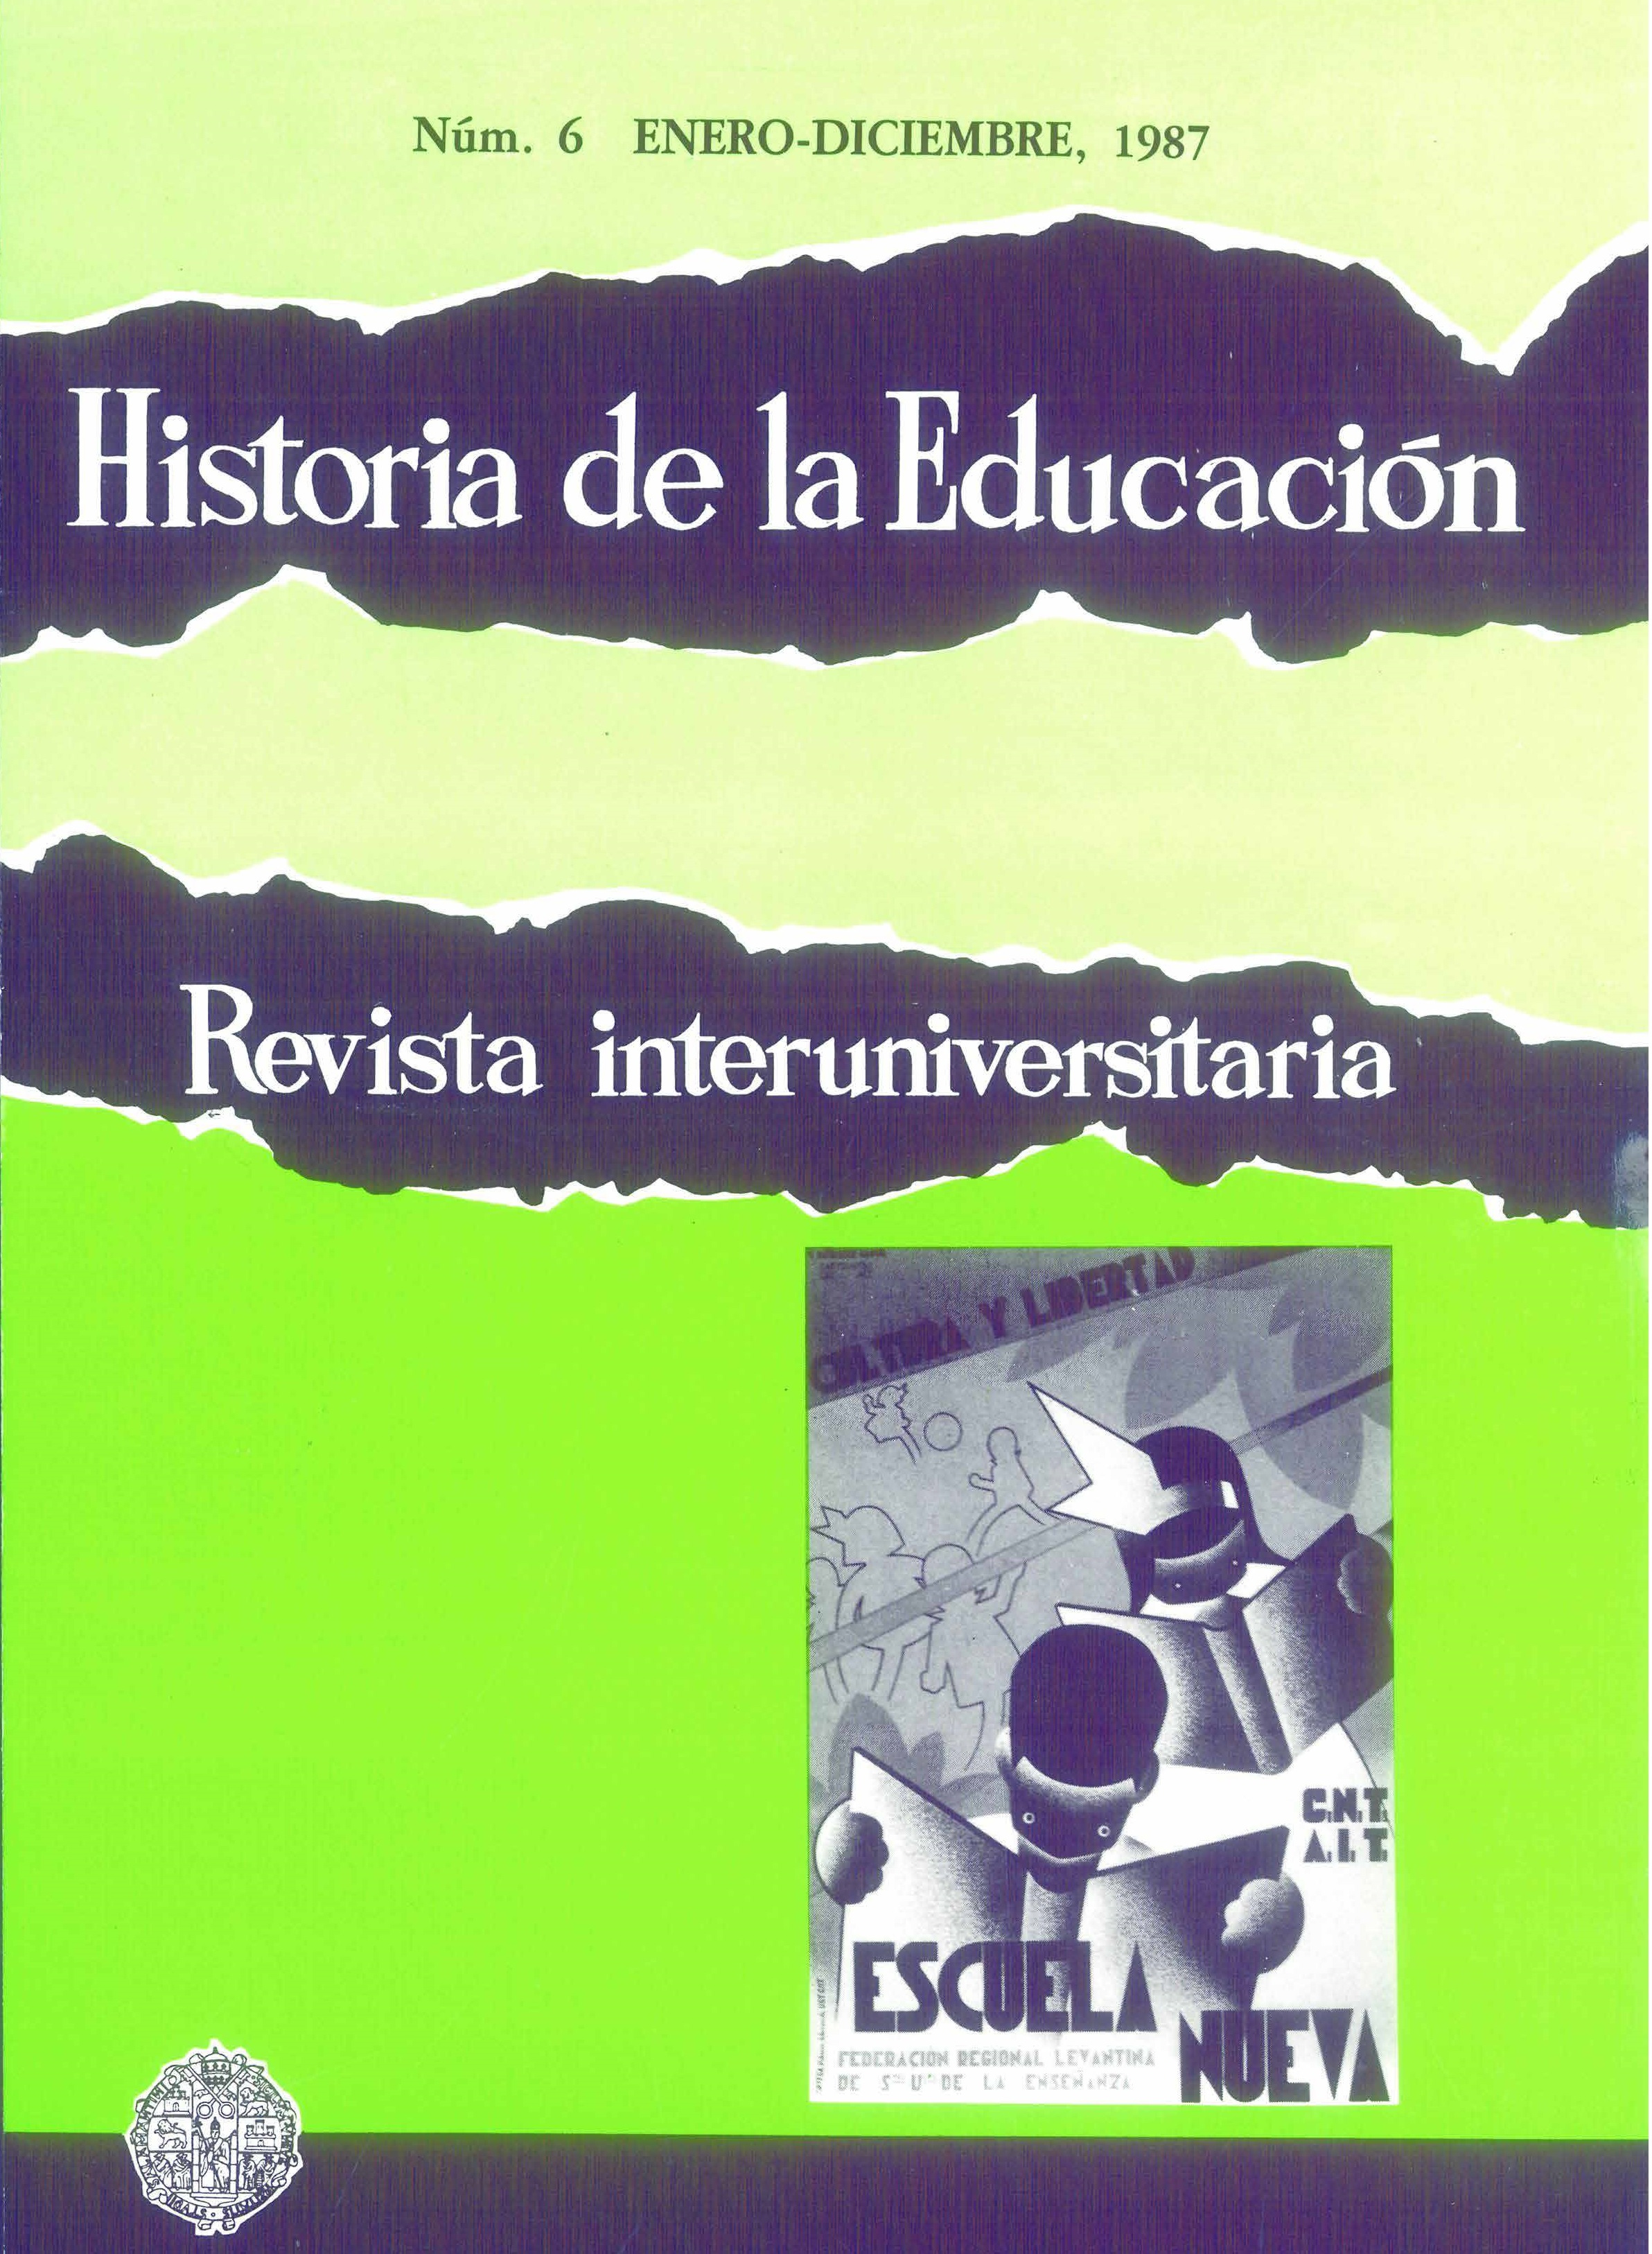                         Ver Vol. 6 (1987): Historia de la infancia
                    